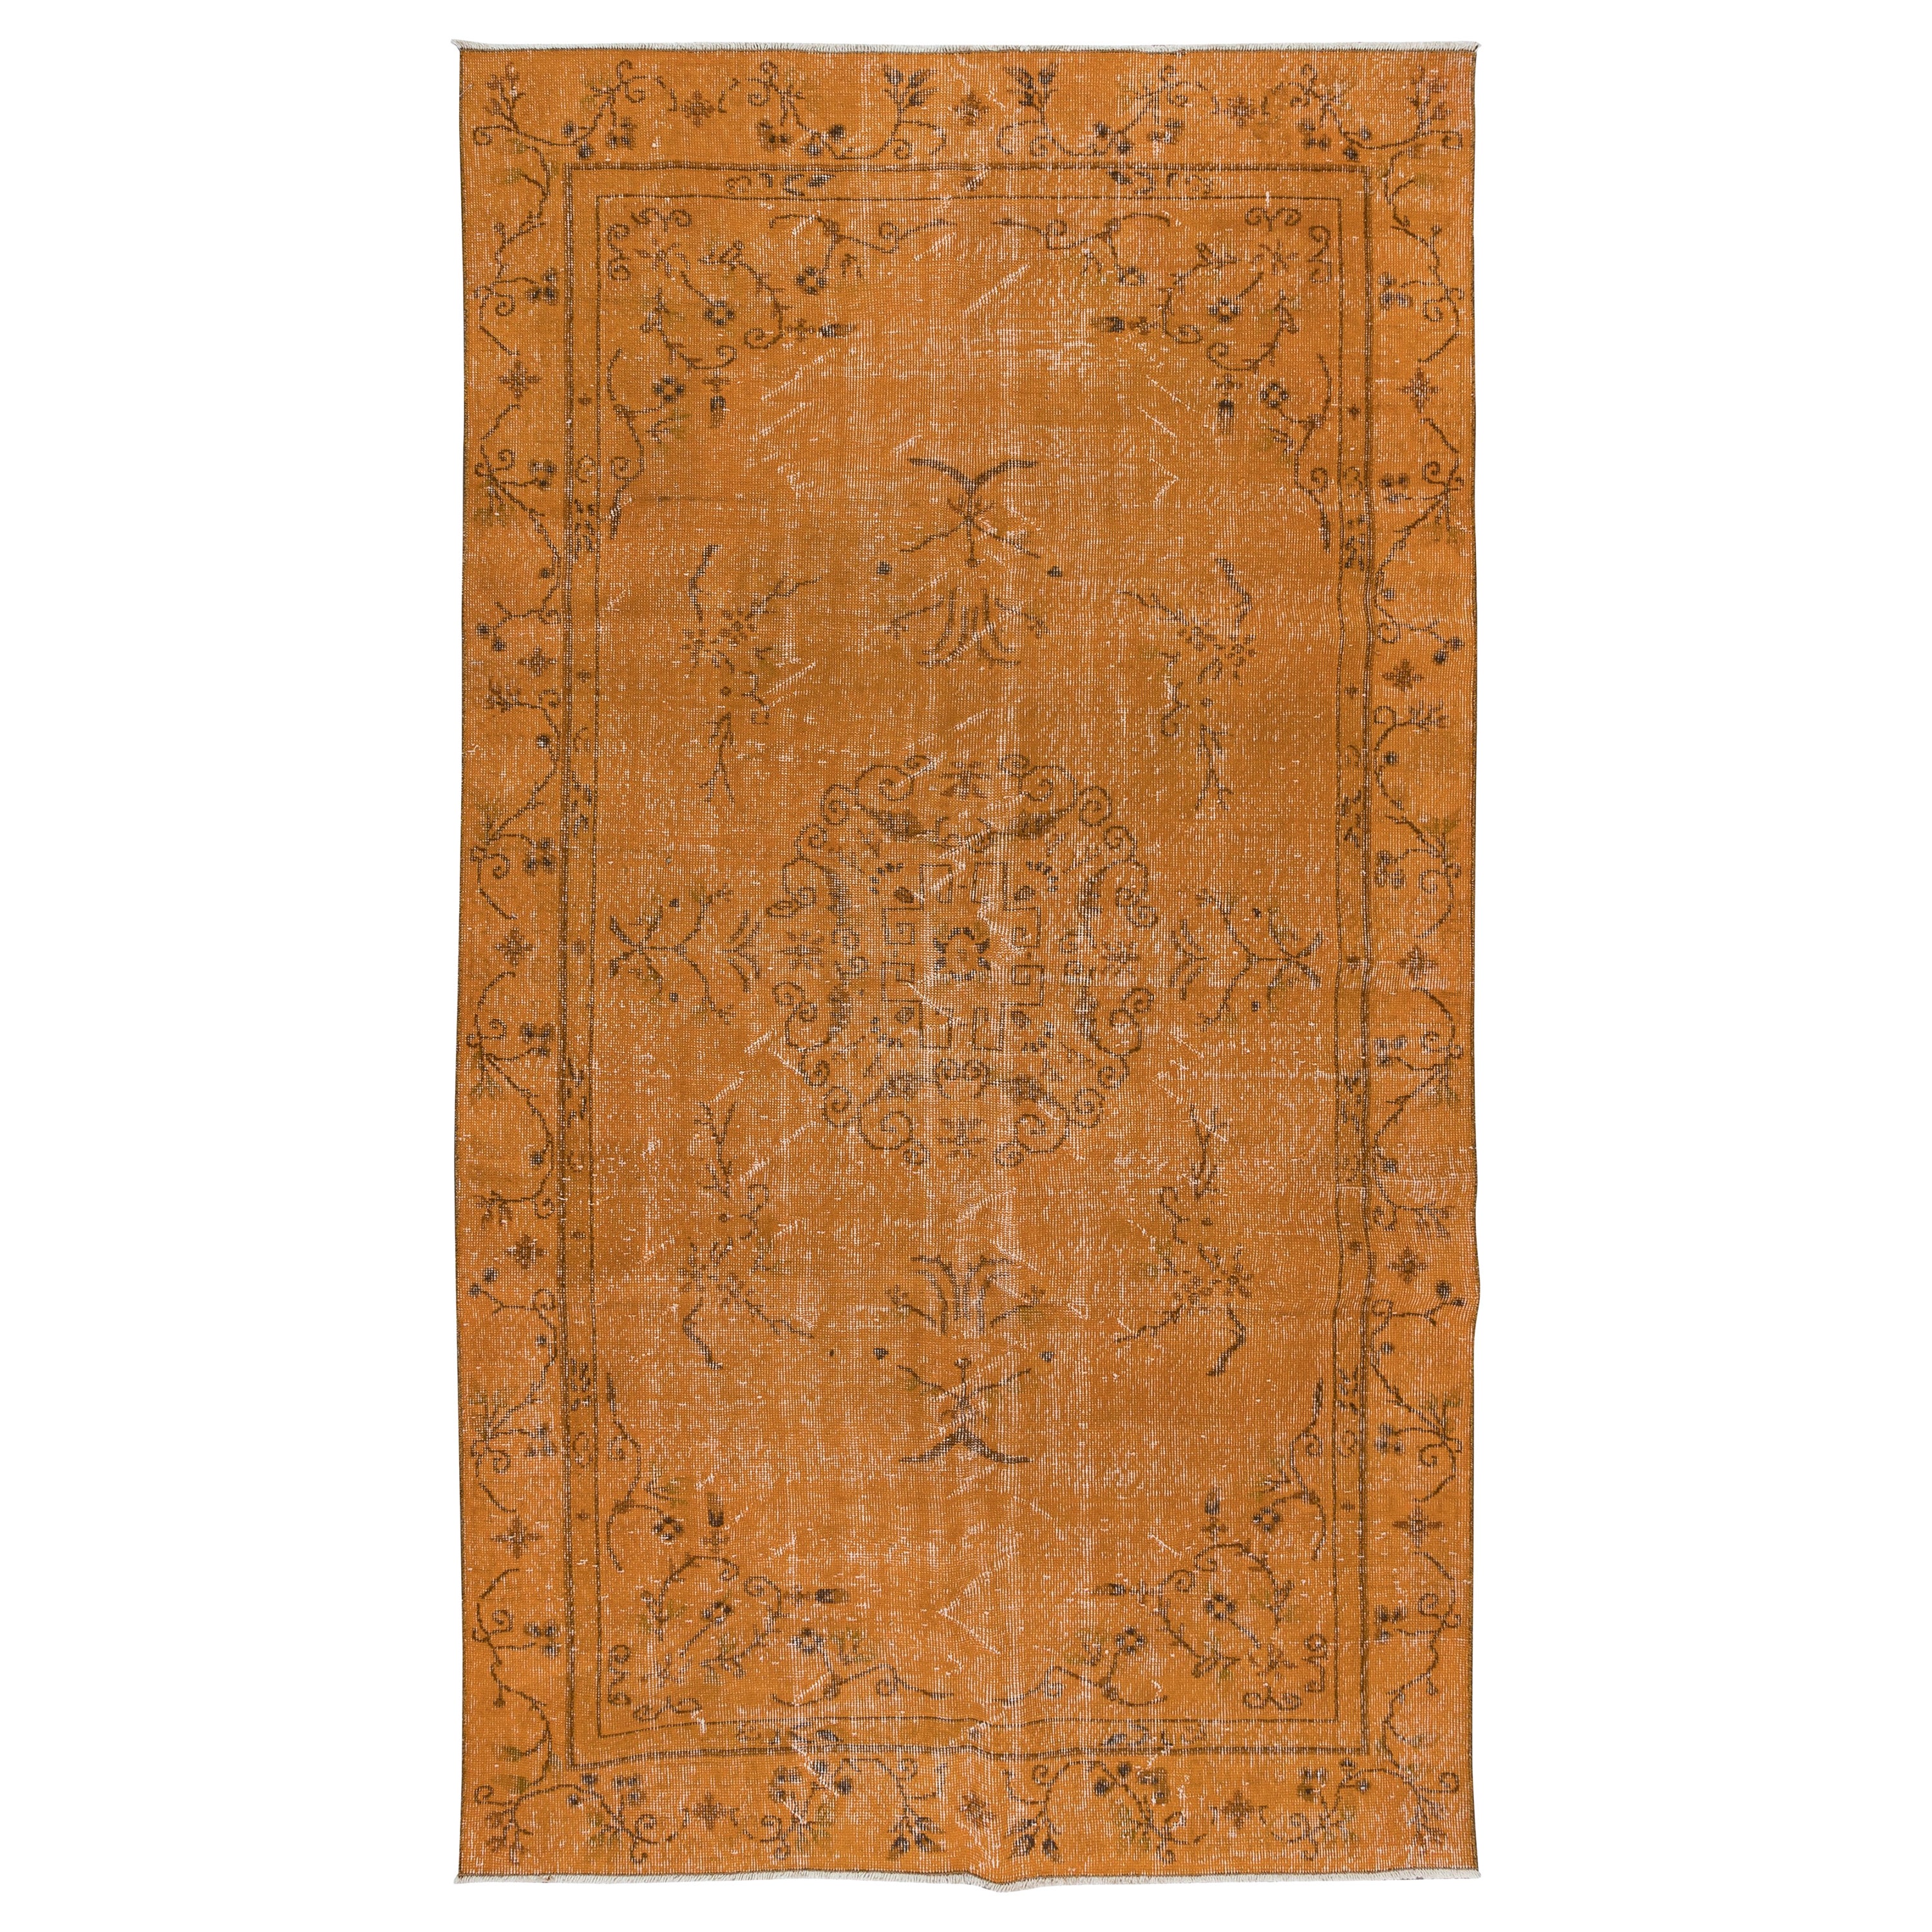 5.5x9.6 Ft Handmade Art Deco Rug, Orange Carpet for Dining Room & Living Room For Sale